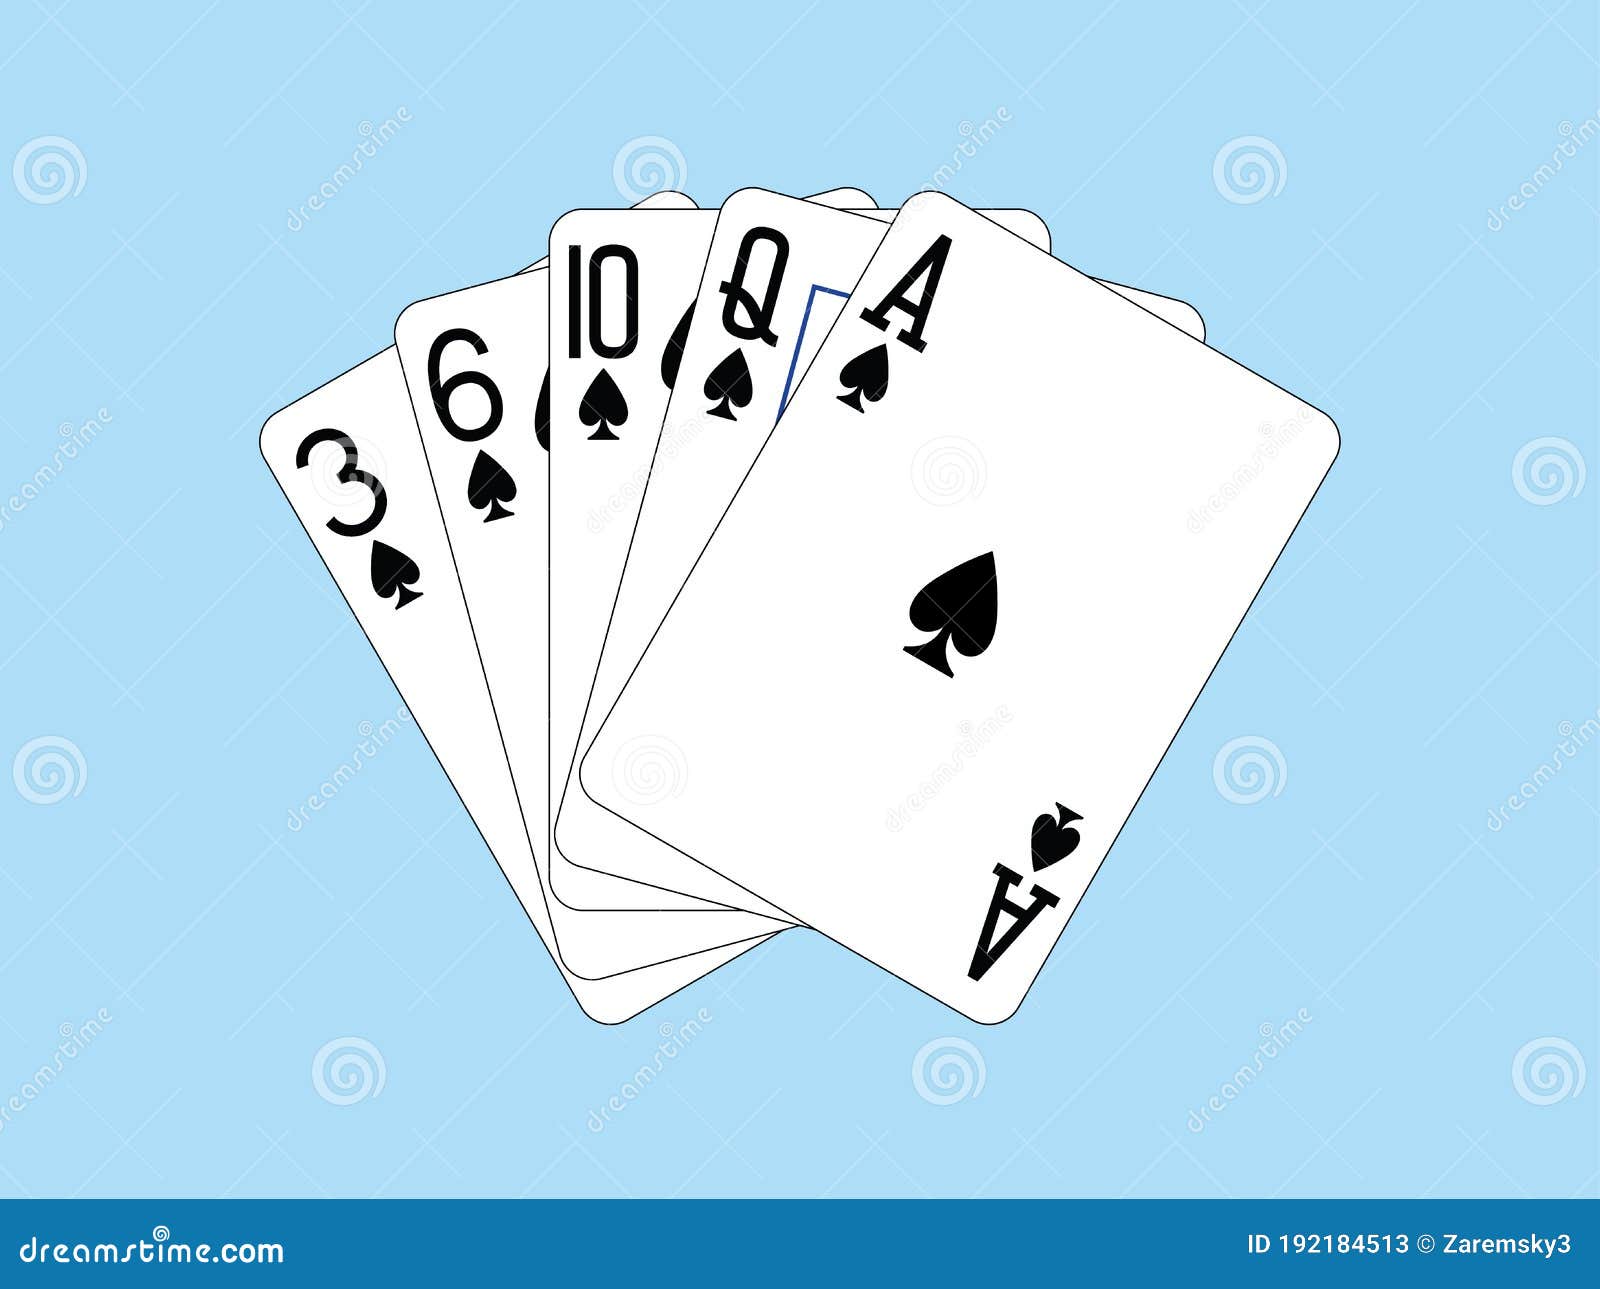 Дама пик в карточной игре сканворд 7. Туз пик. Валет пики. Карты Покер Пиковая дама. Рука мертвеца Покер обои.